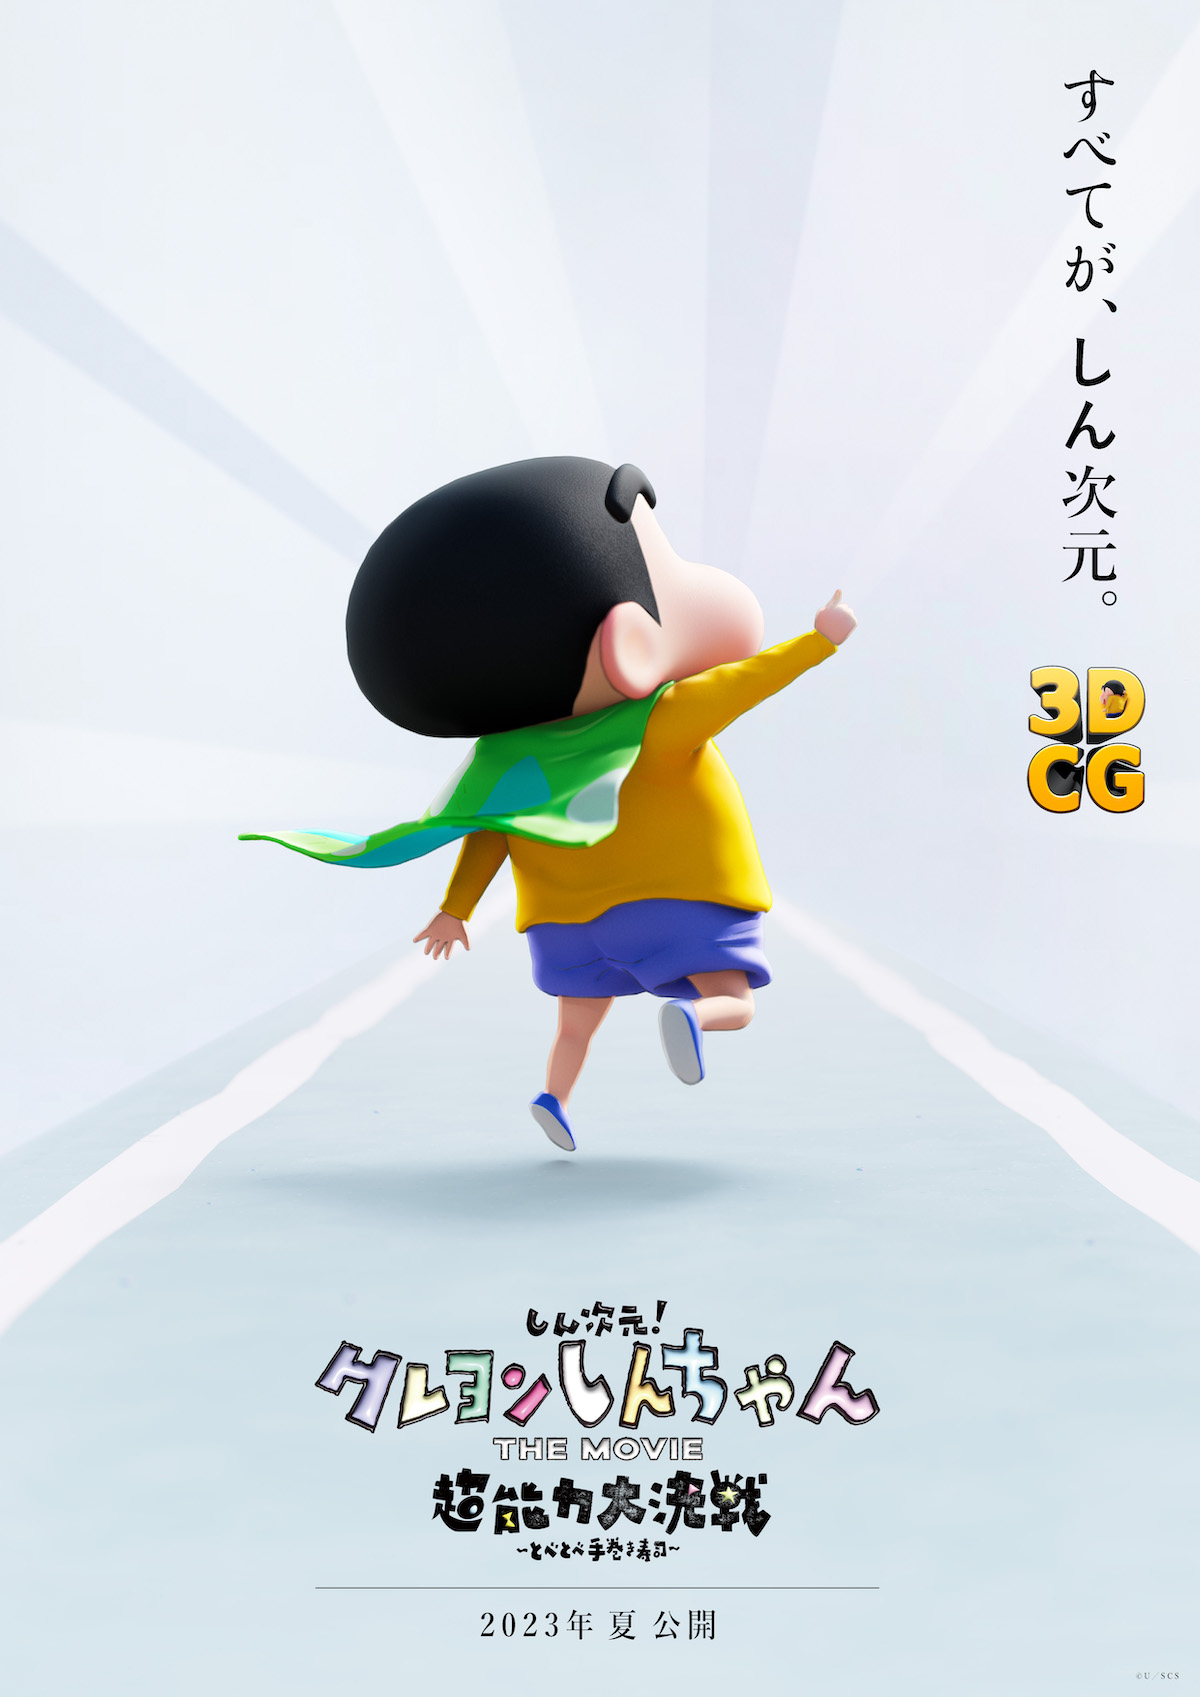 クレヨンしんちゃん』シリーズ初の3DCG映画、2023年夏公開決定 監督は 